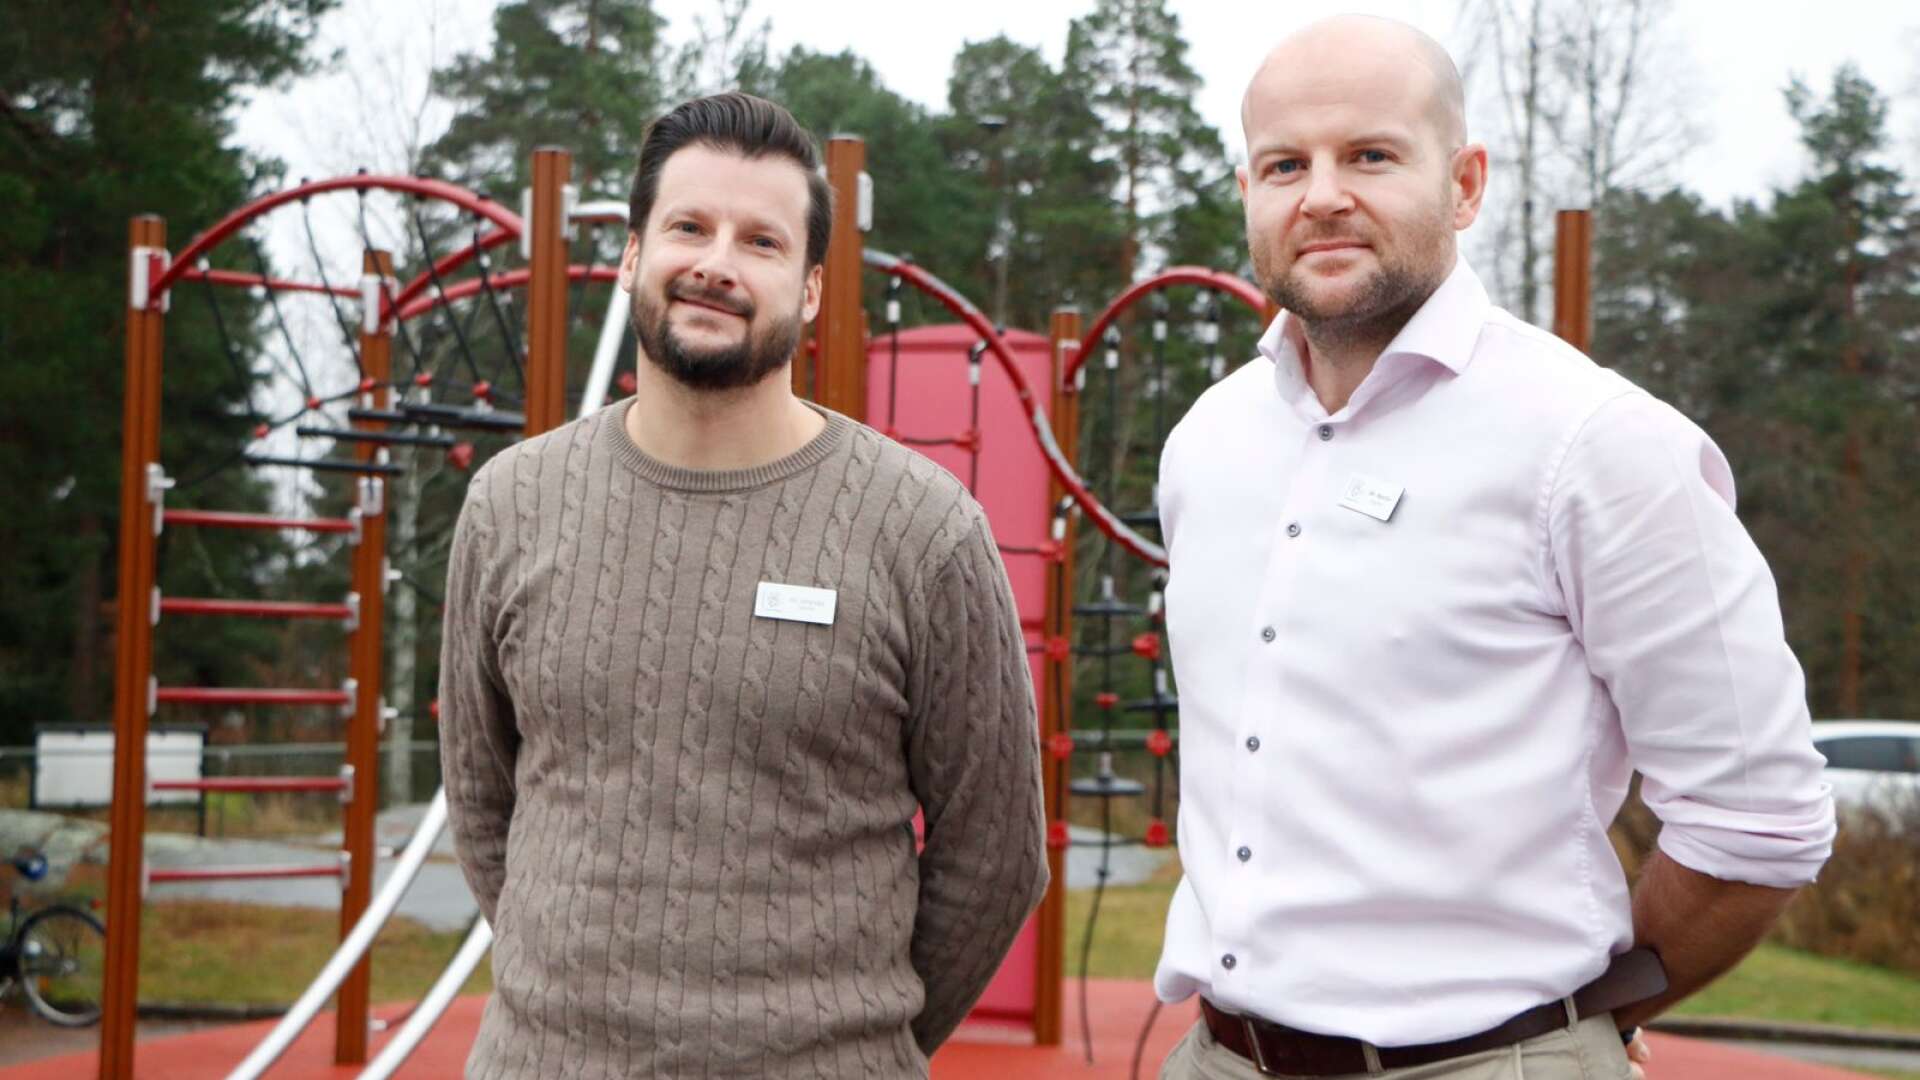 Alexander Bredberger Mitander och Andrew Martin, båda lärare vid IES, delar utmärkelsen Värmlands bästa lärare 2020.